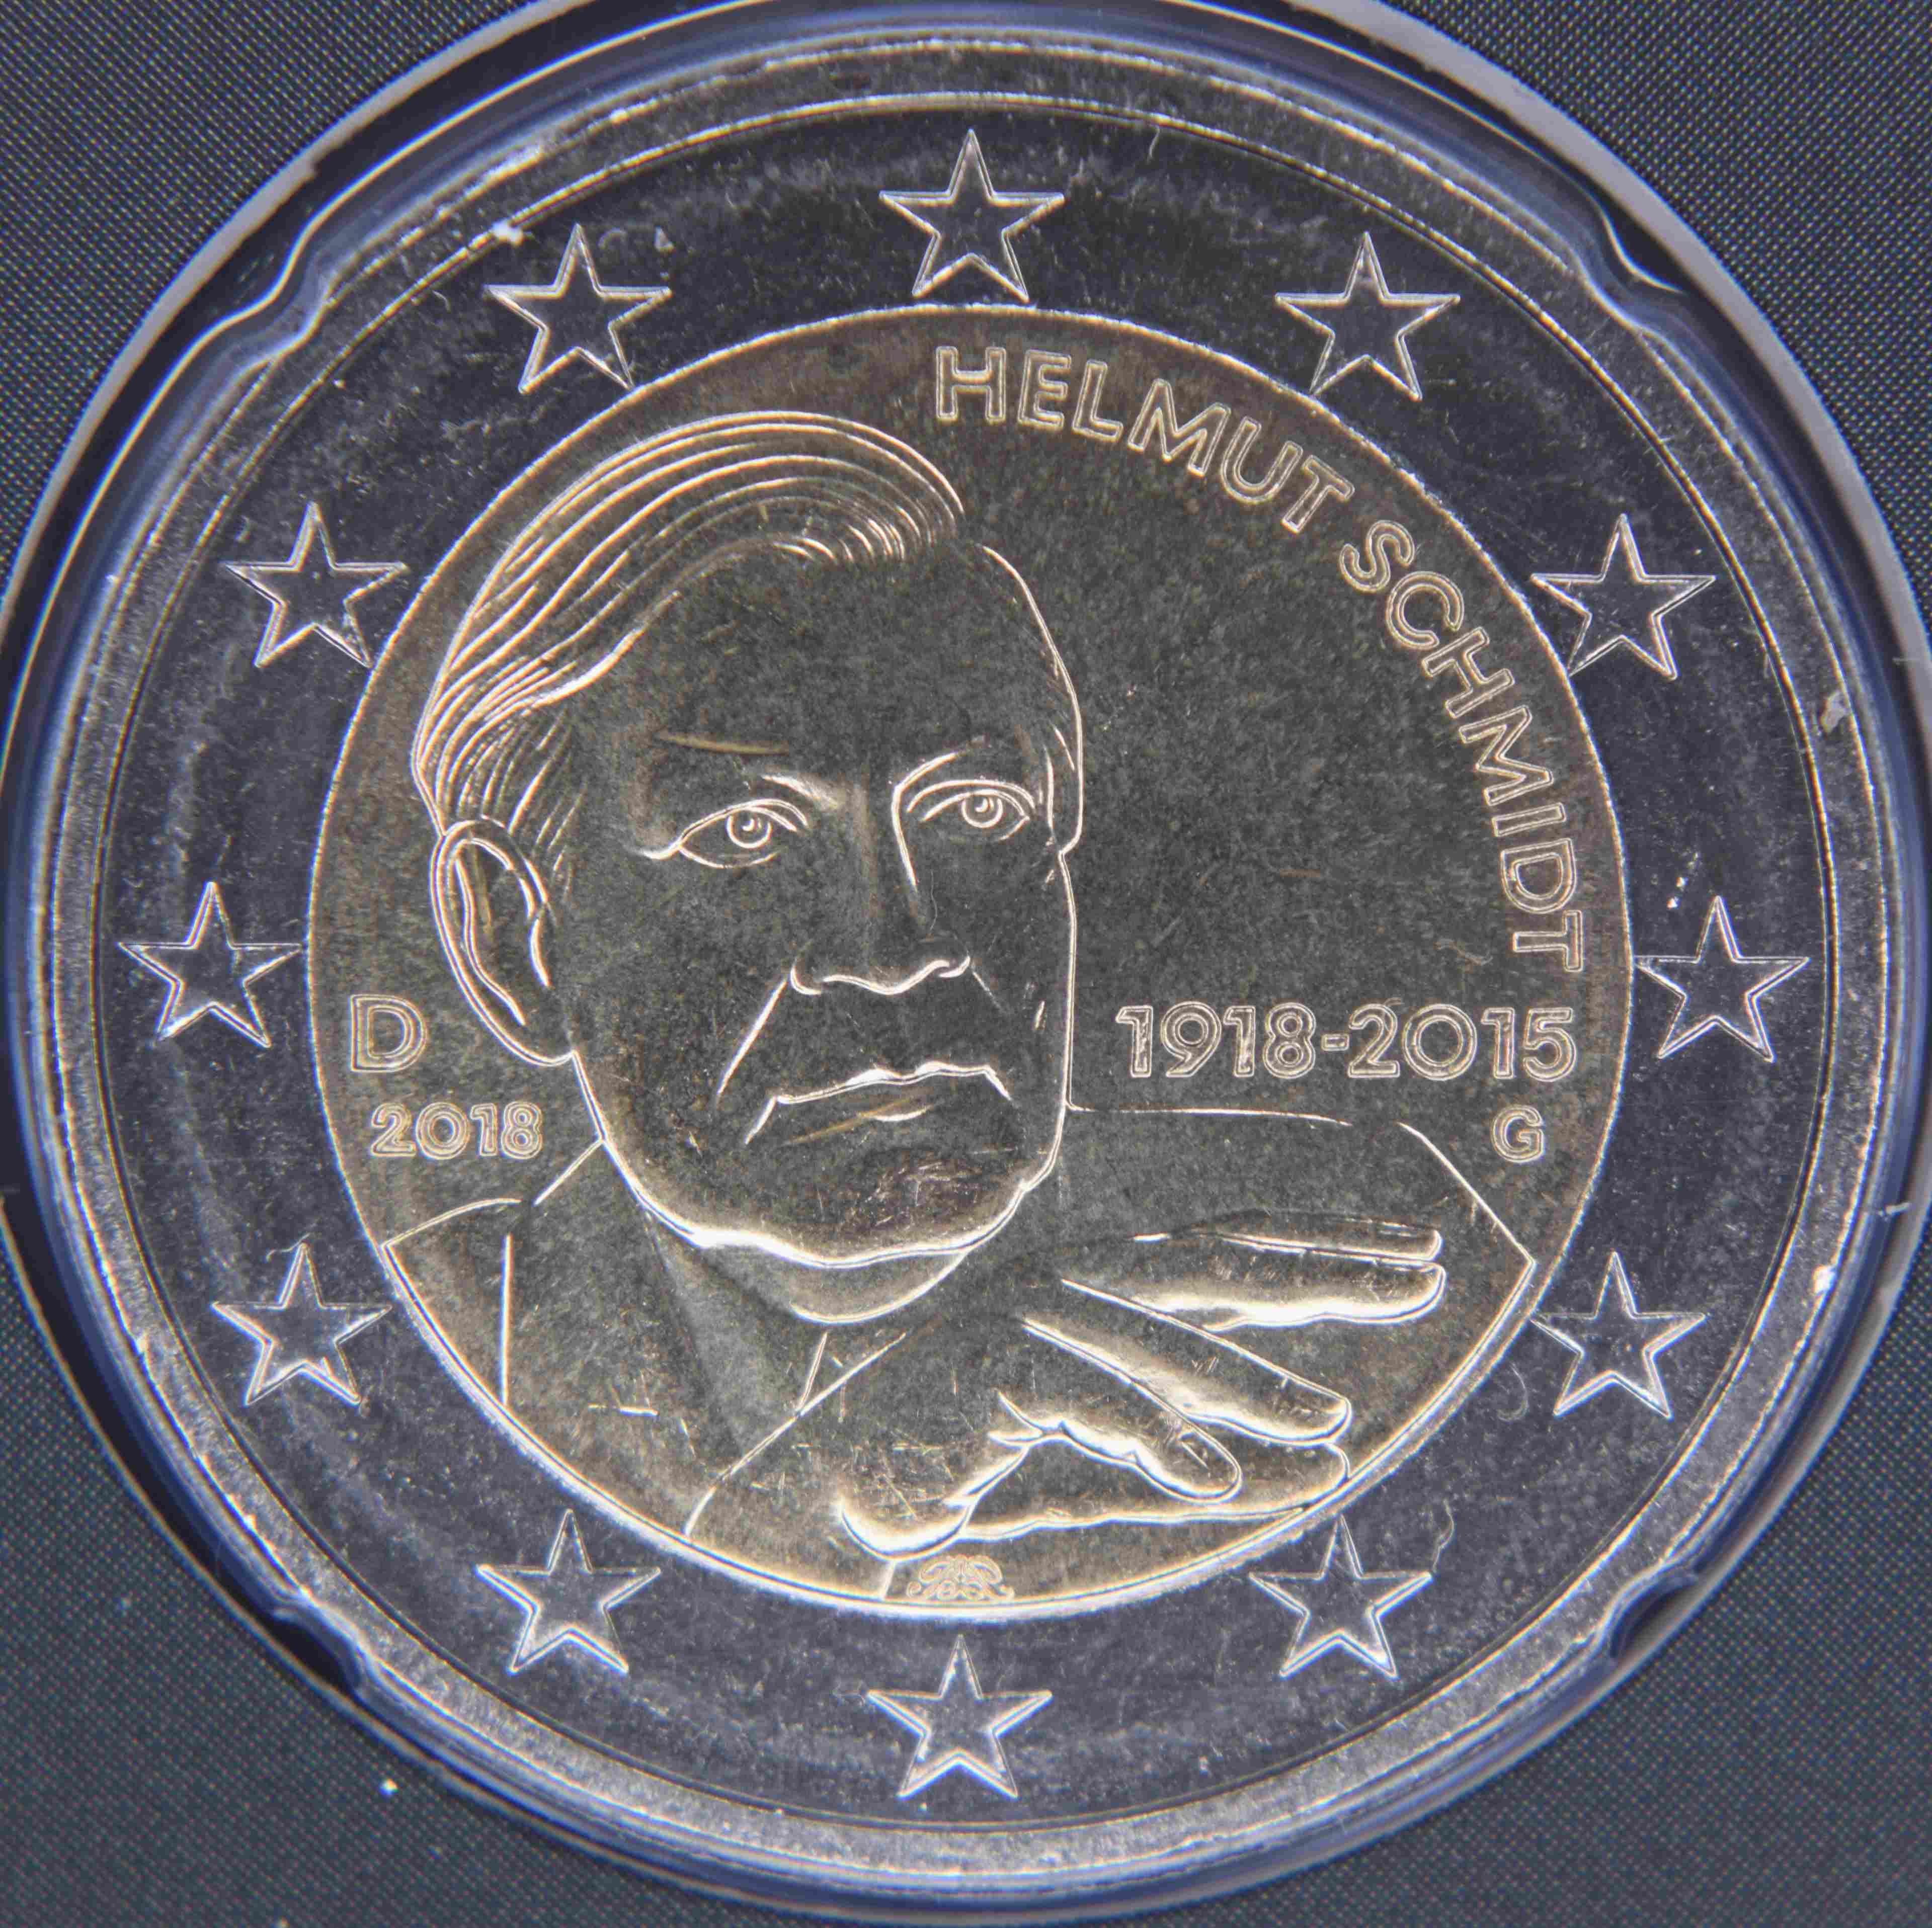 Deutschland 2 Euro Münze 2018 - 100. Geburtstag von Helmut Schmidt - G